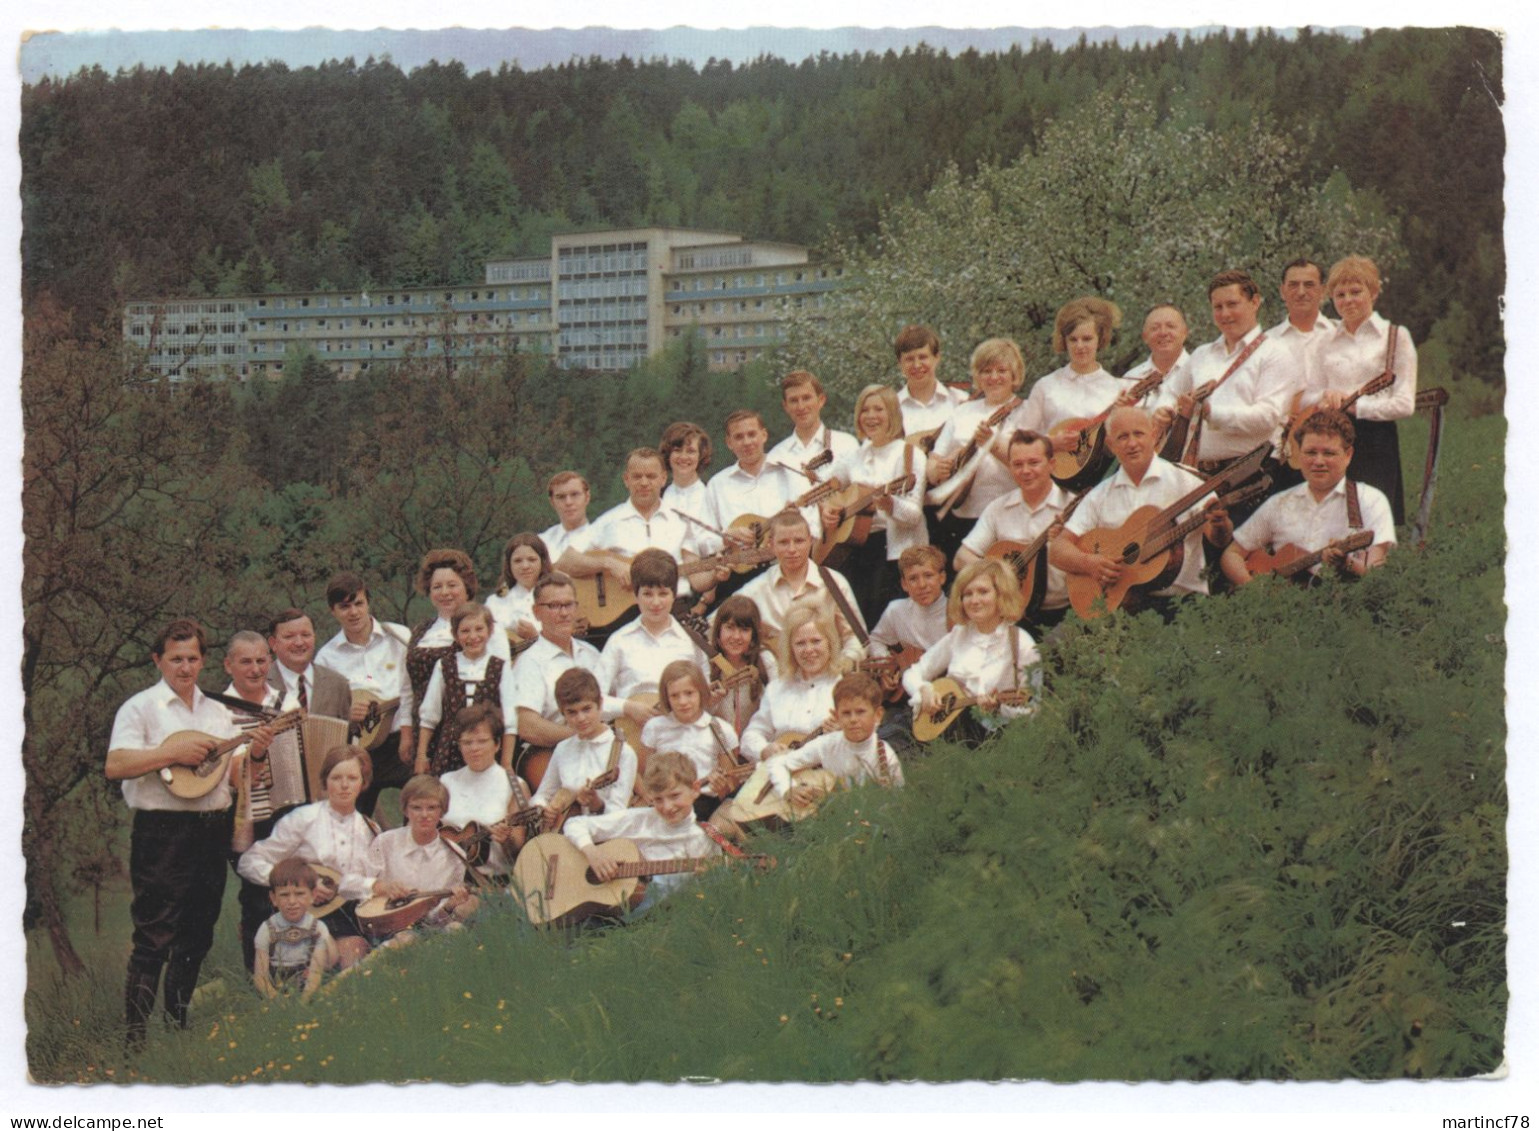 8623 Staffelstein Ofr. Klampfengruppe Des Touristenvereins Die Naturfreunde E.V. 1973 - Staffelstein